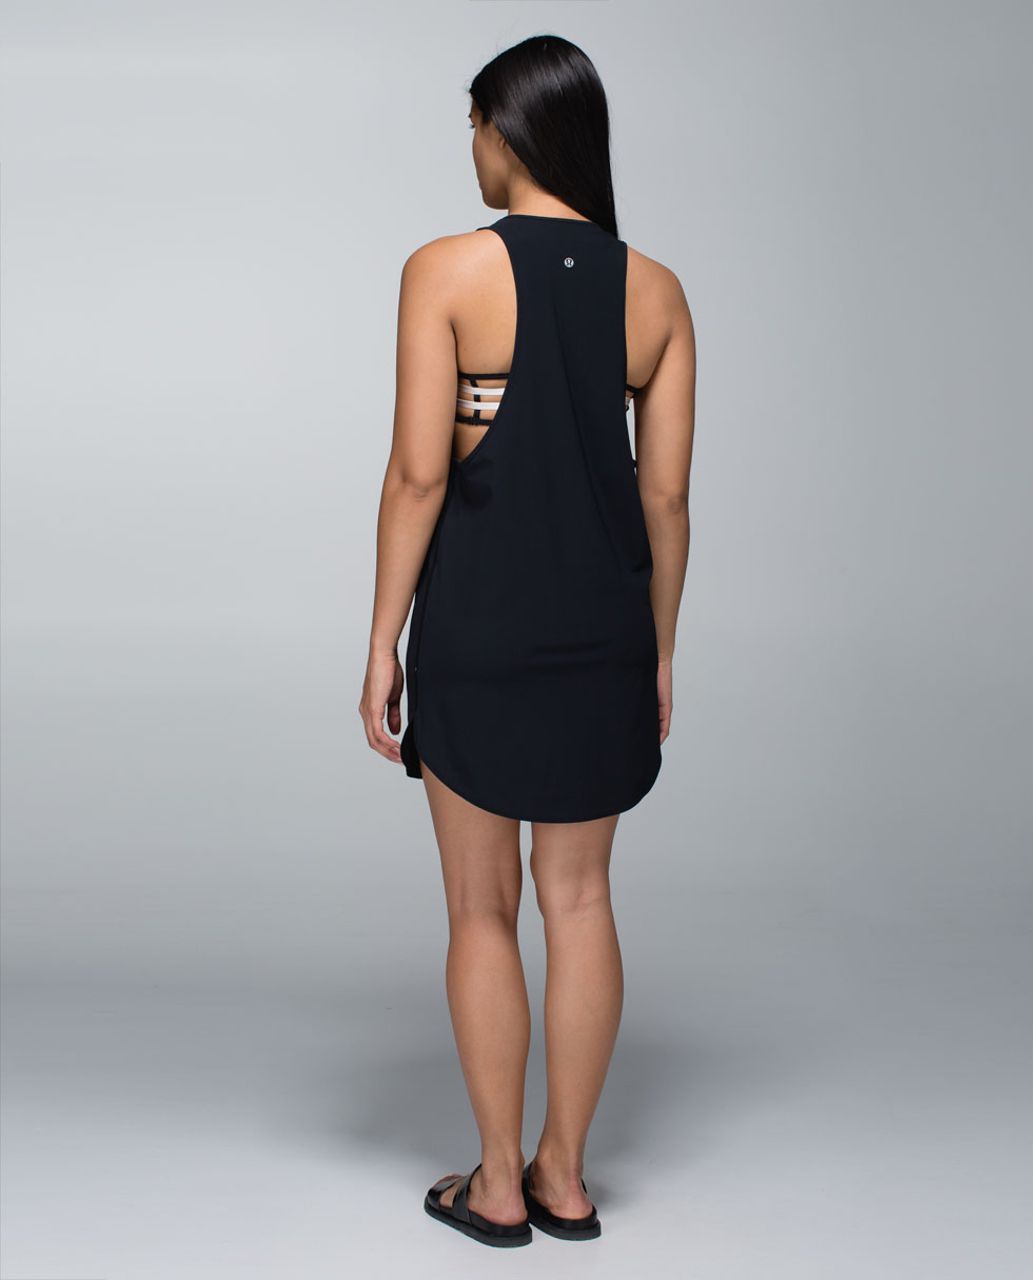 Lululemon Coastal Dress - Black